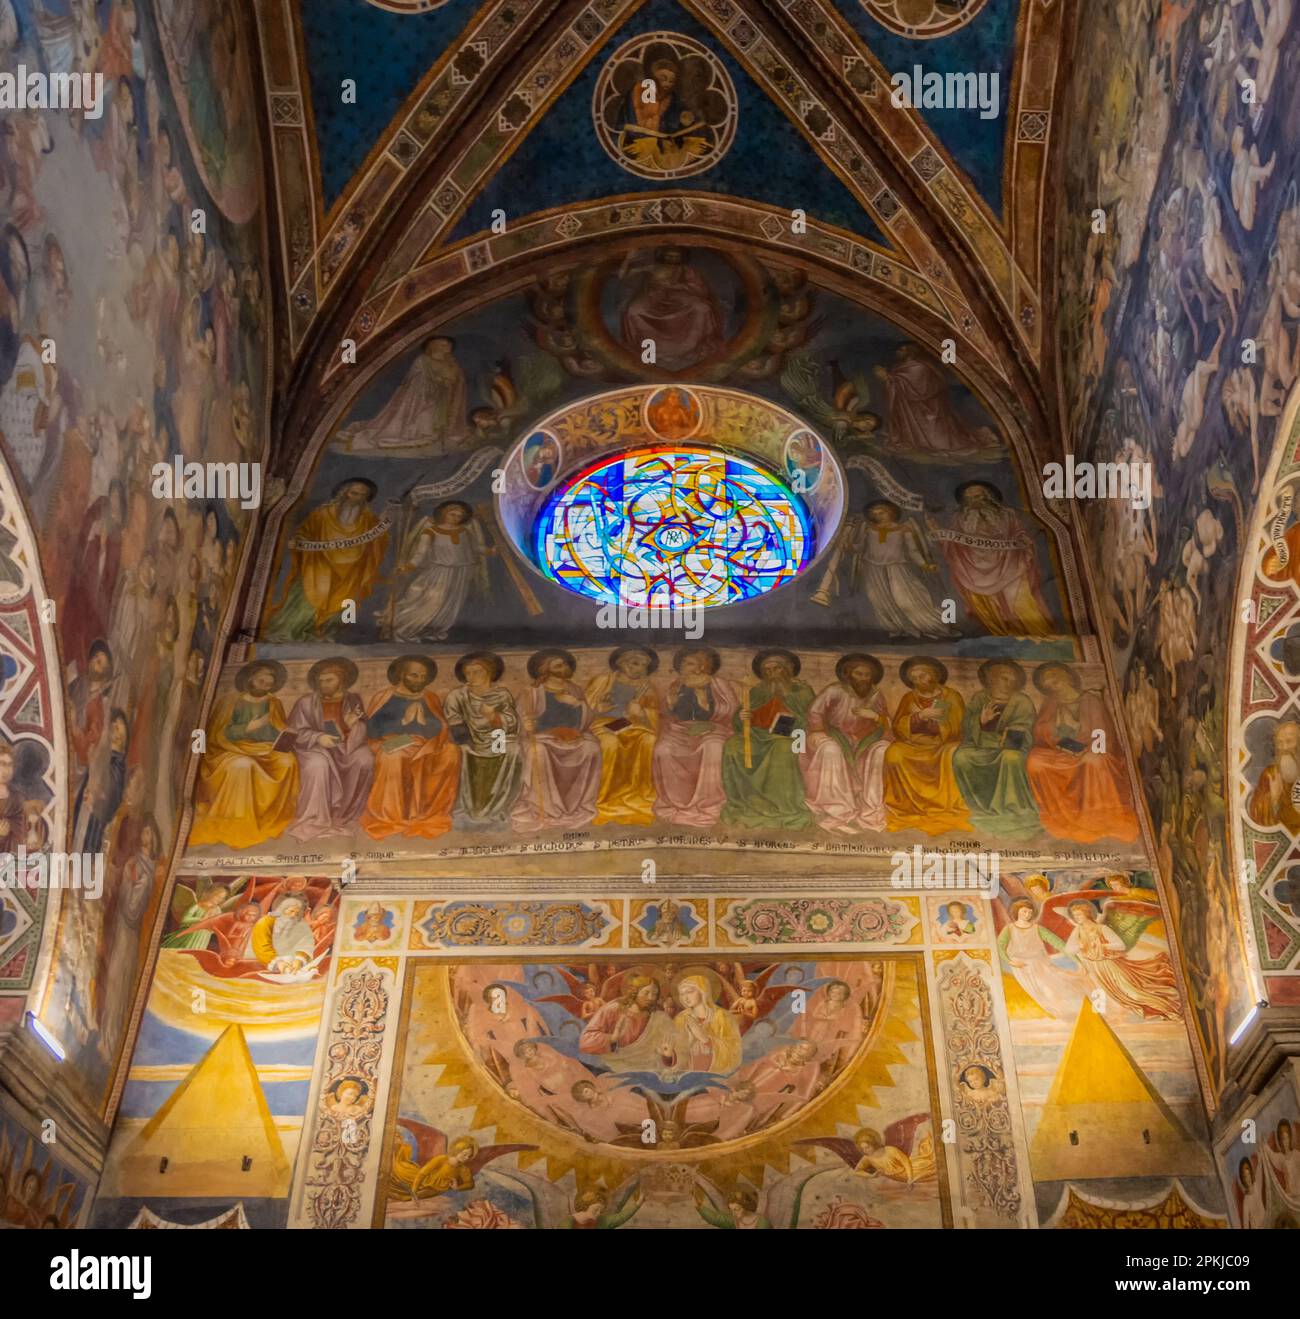 Collégiale de Santa Maria Assunta, San Gimignano - sculptures et fresques à l'intérieur de l'église . Province de Sienne, Toscane, Italie, Europe - juin Banque D'Images